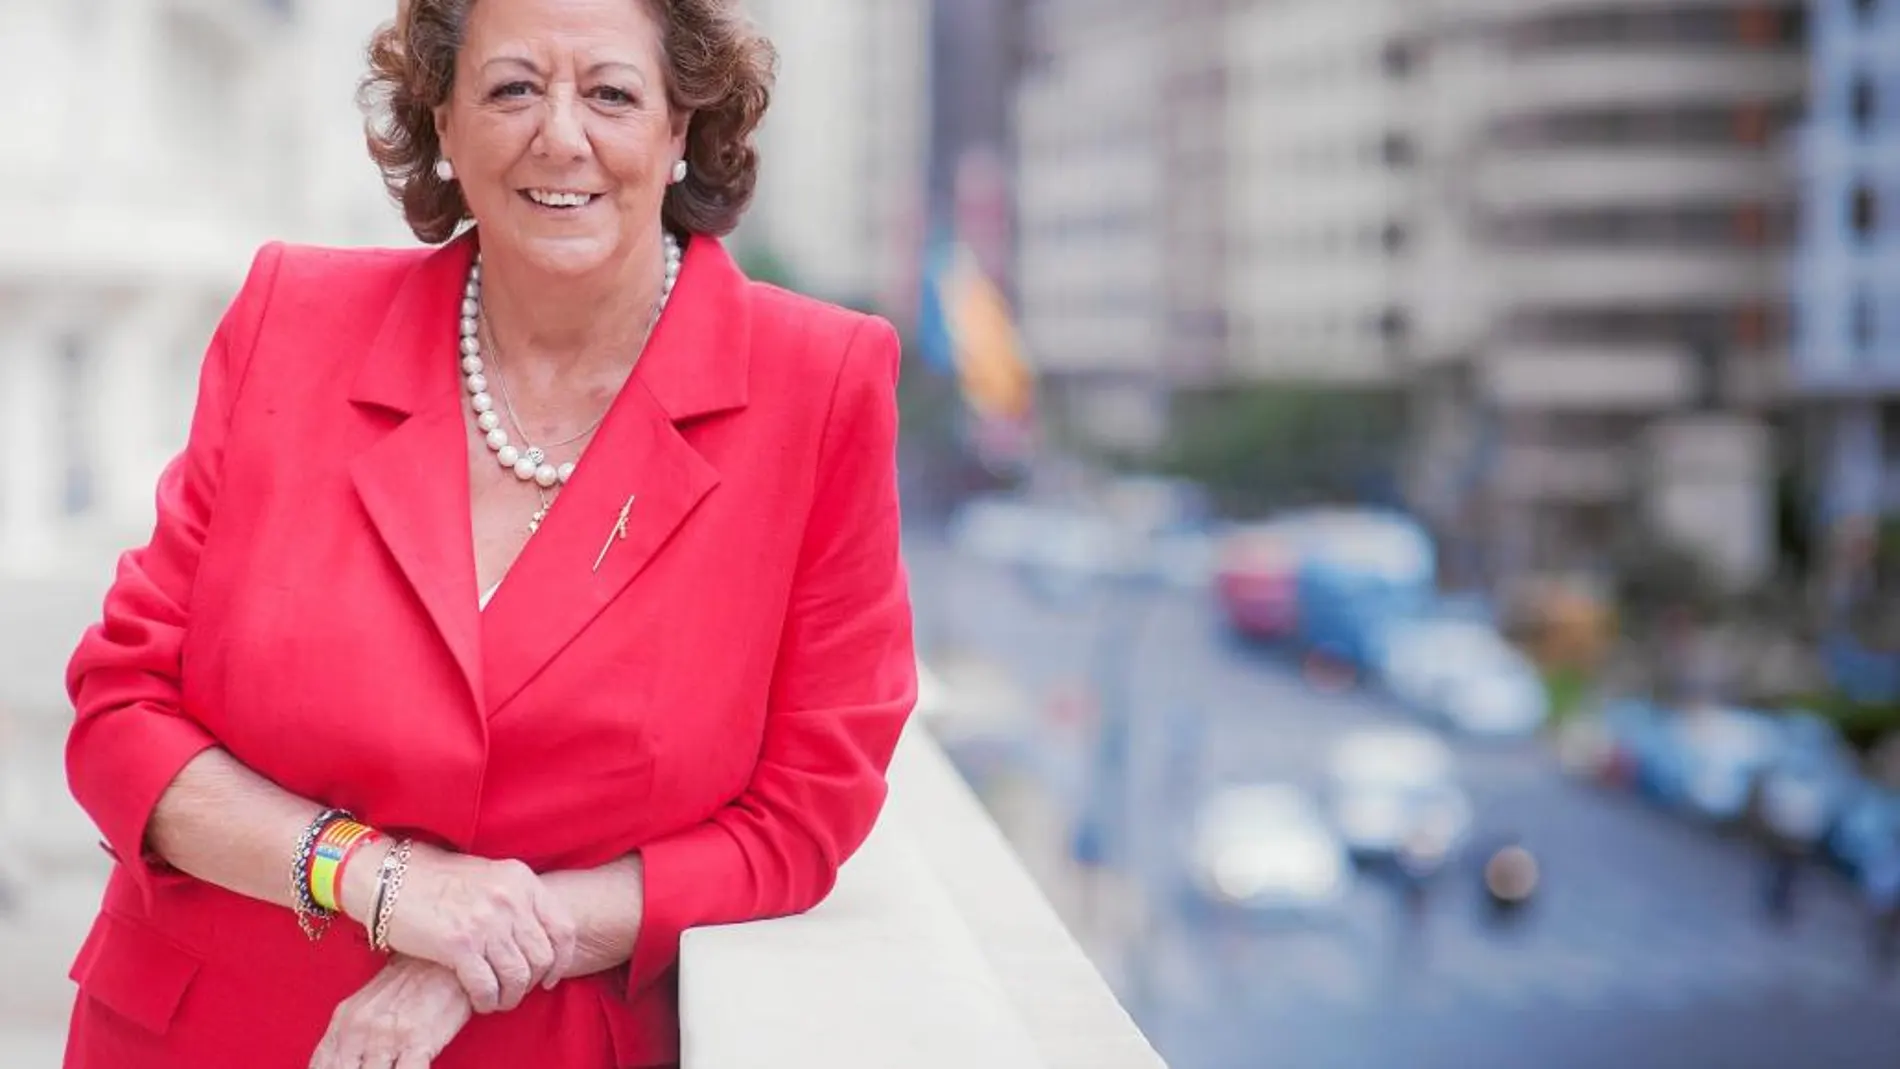 Rita Barberá / Alcaldesa de Valencia y candidata popular a la alcaldía